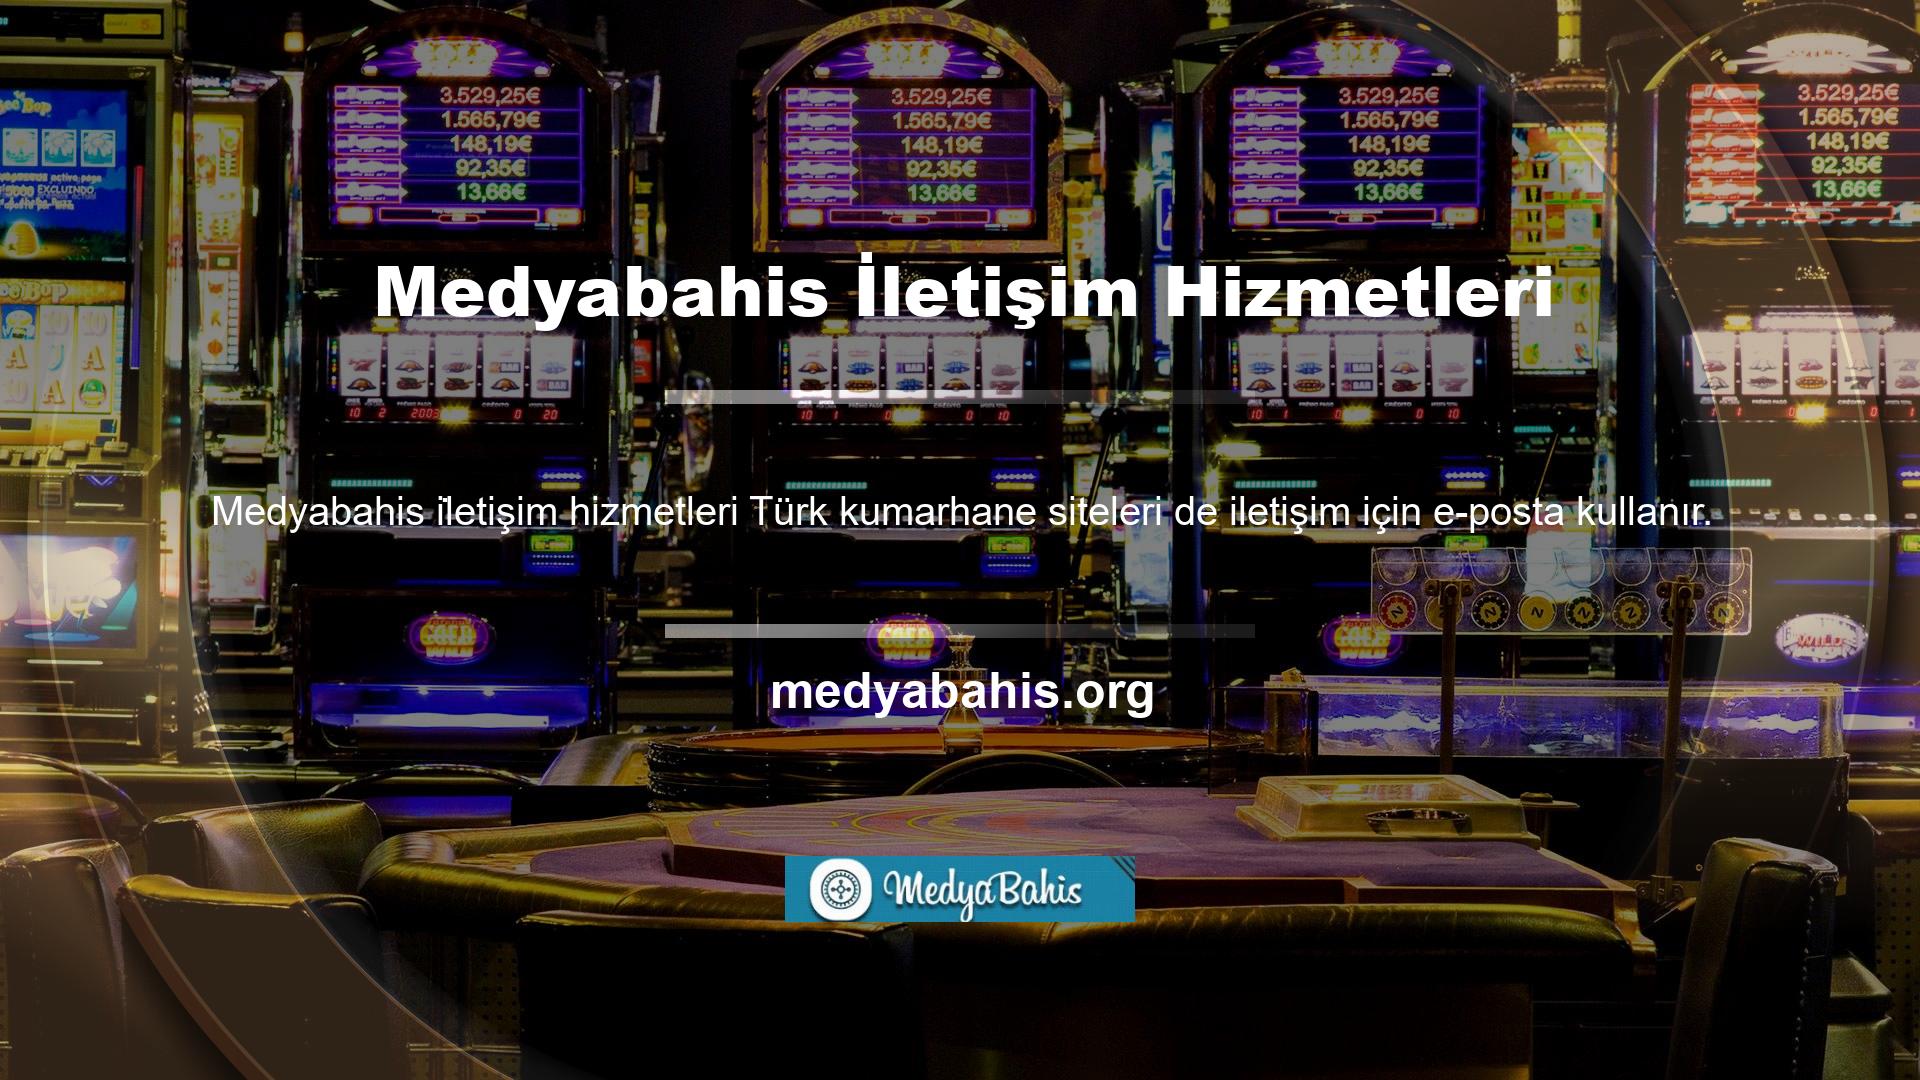 @Medyabahis